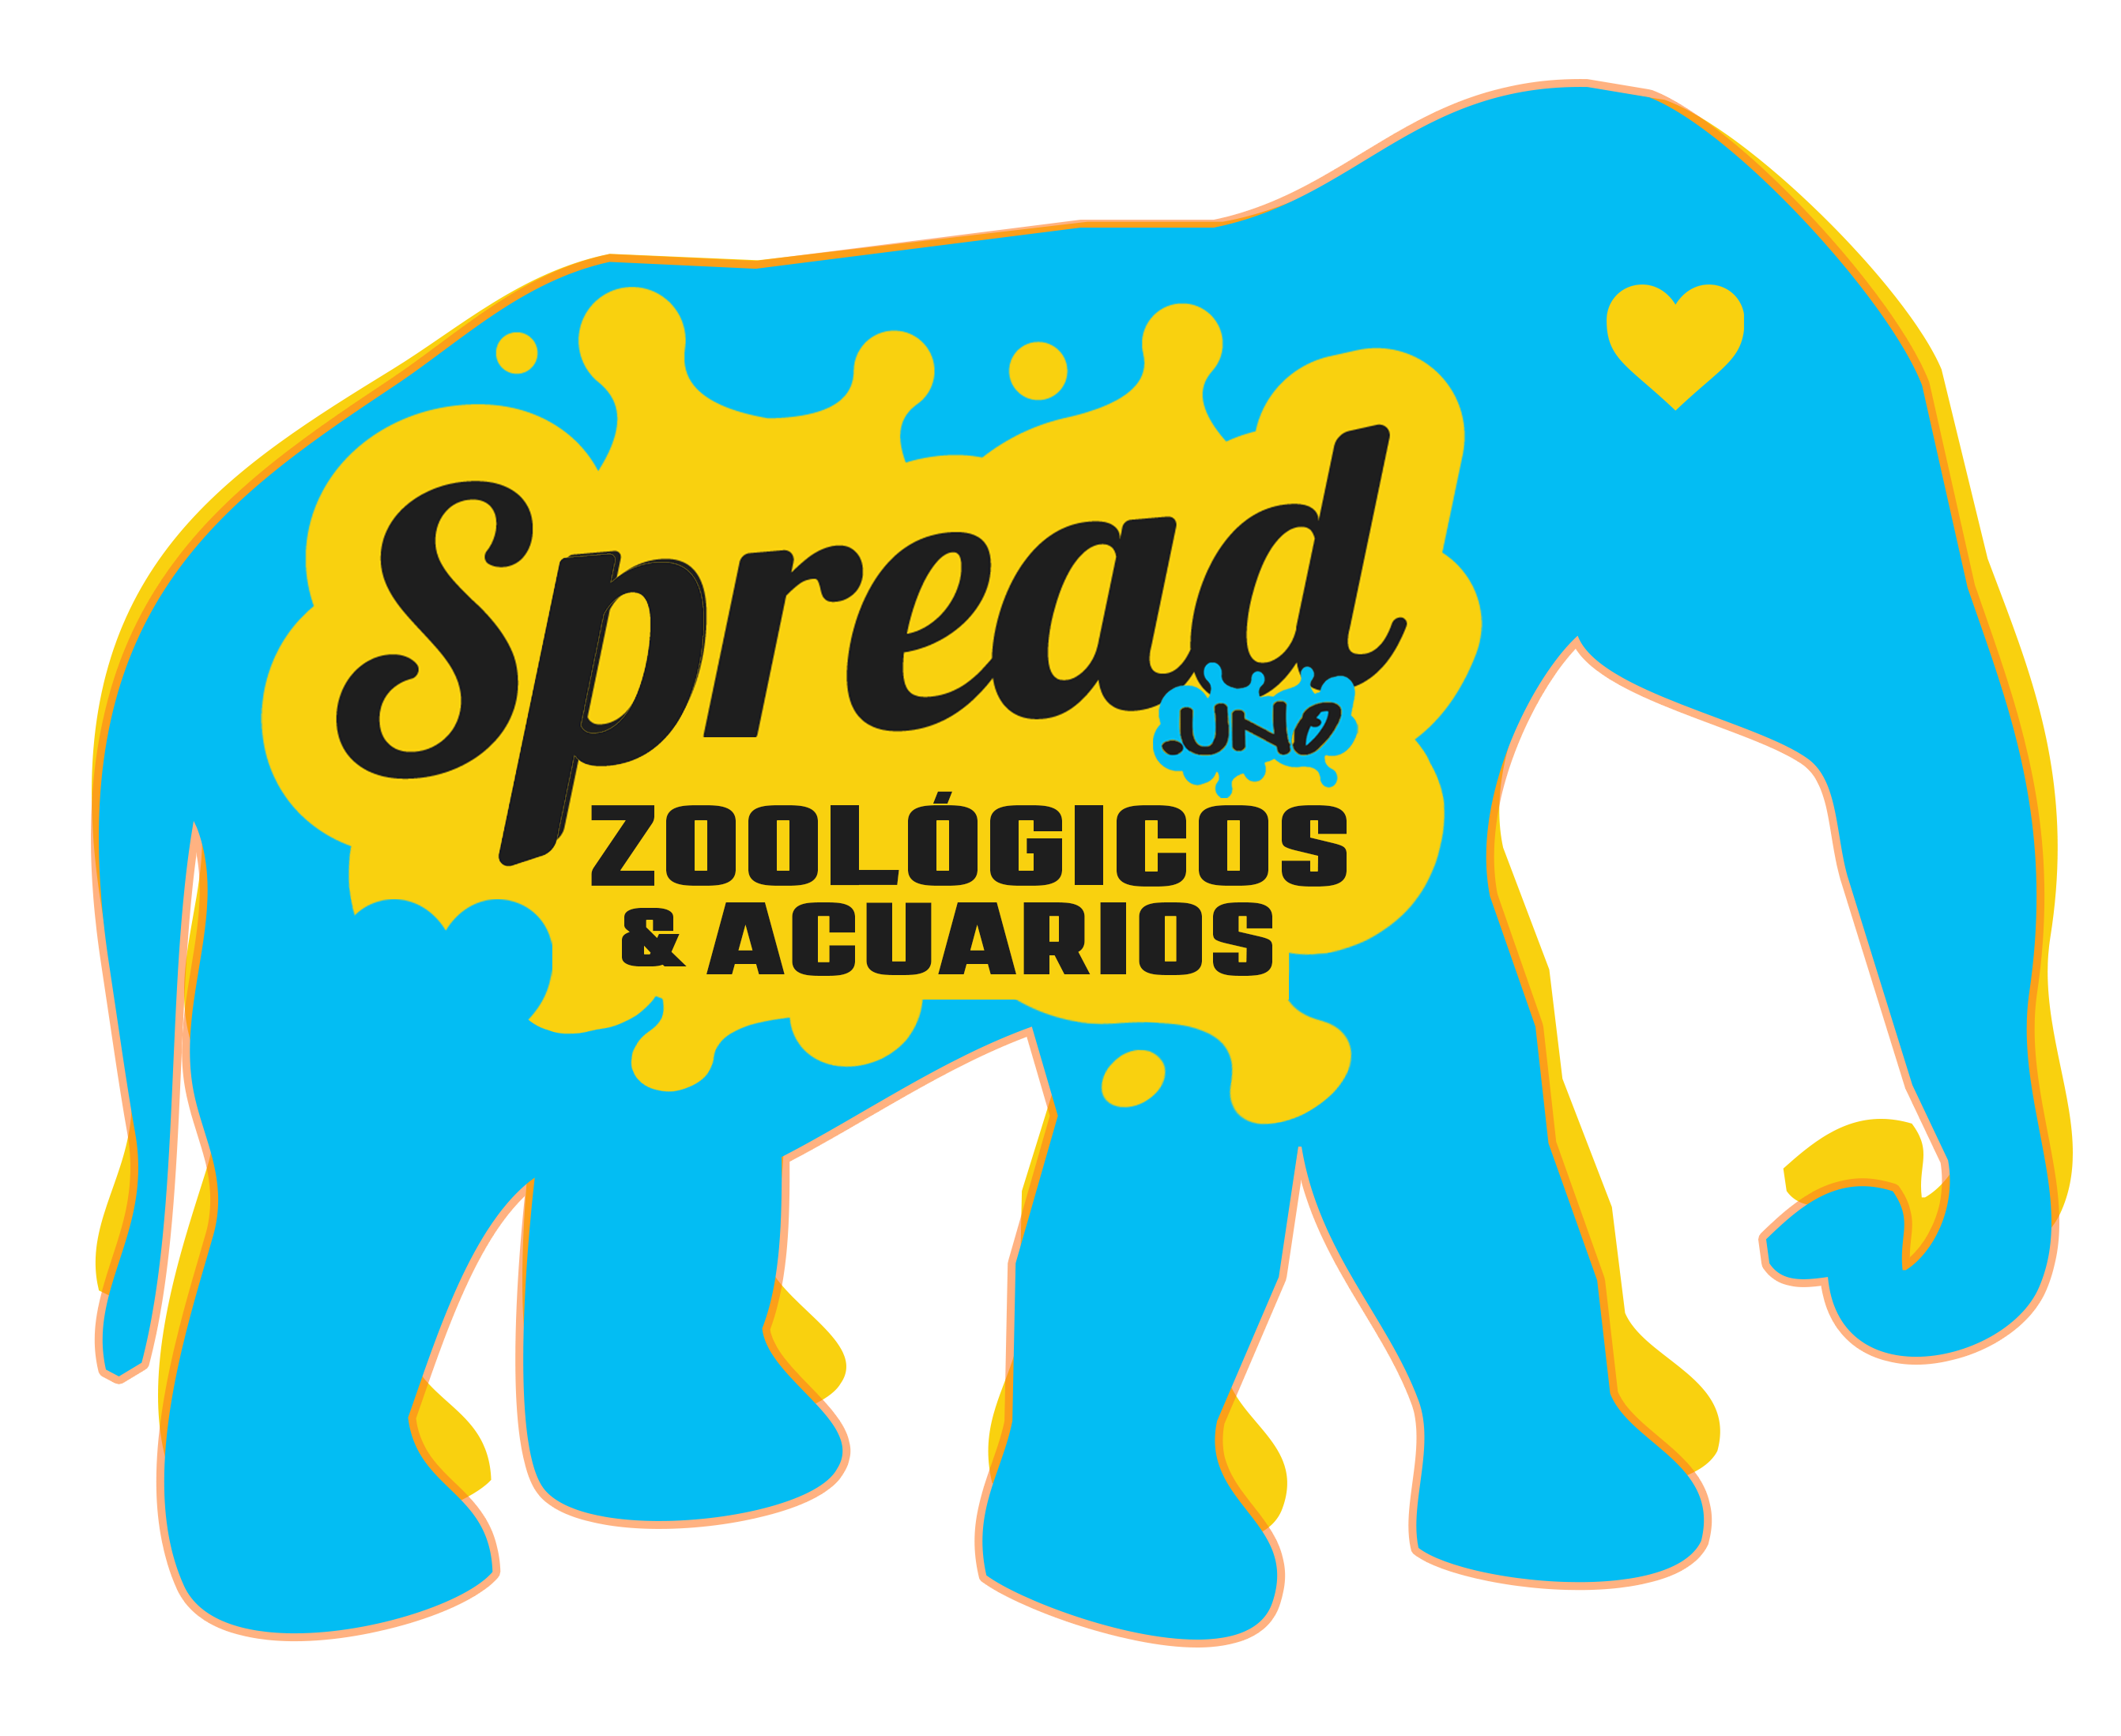 zoo.spread.uno